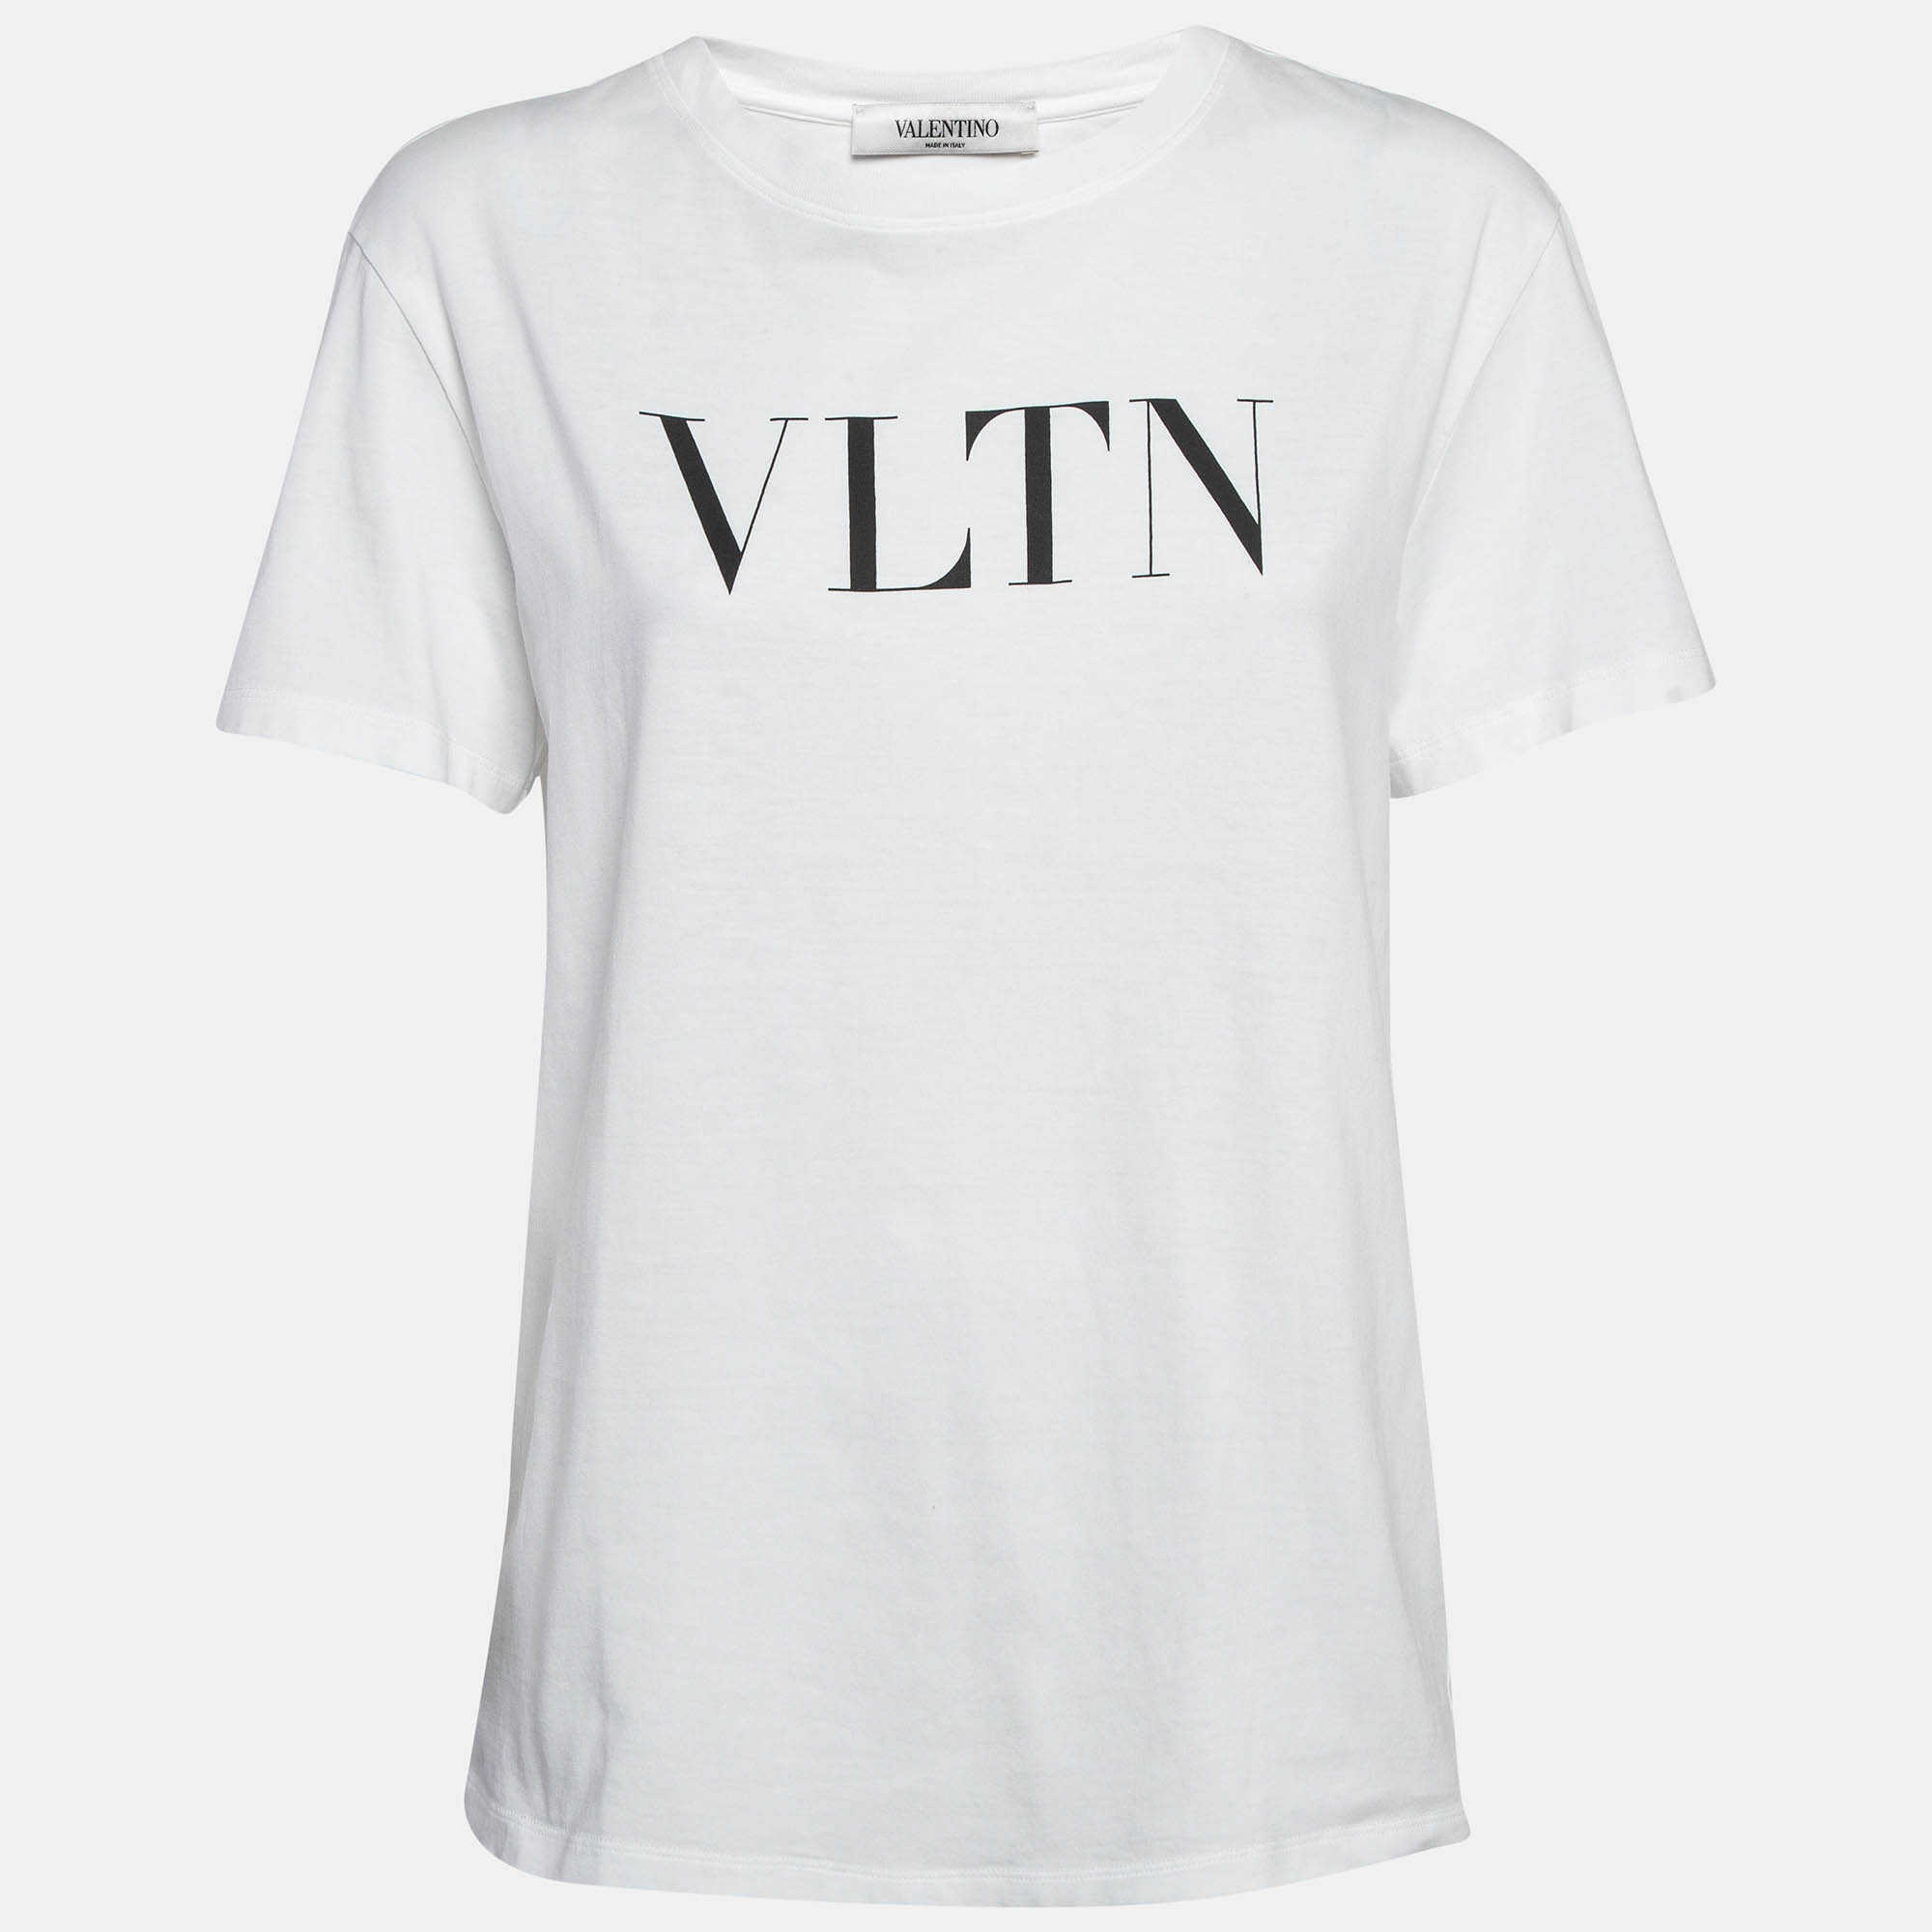 

Valentino White VLTN Printed Cotton T-Shirt